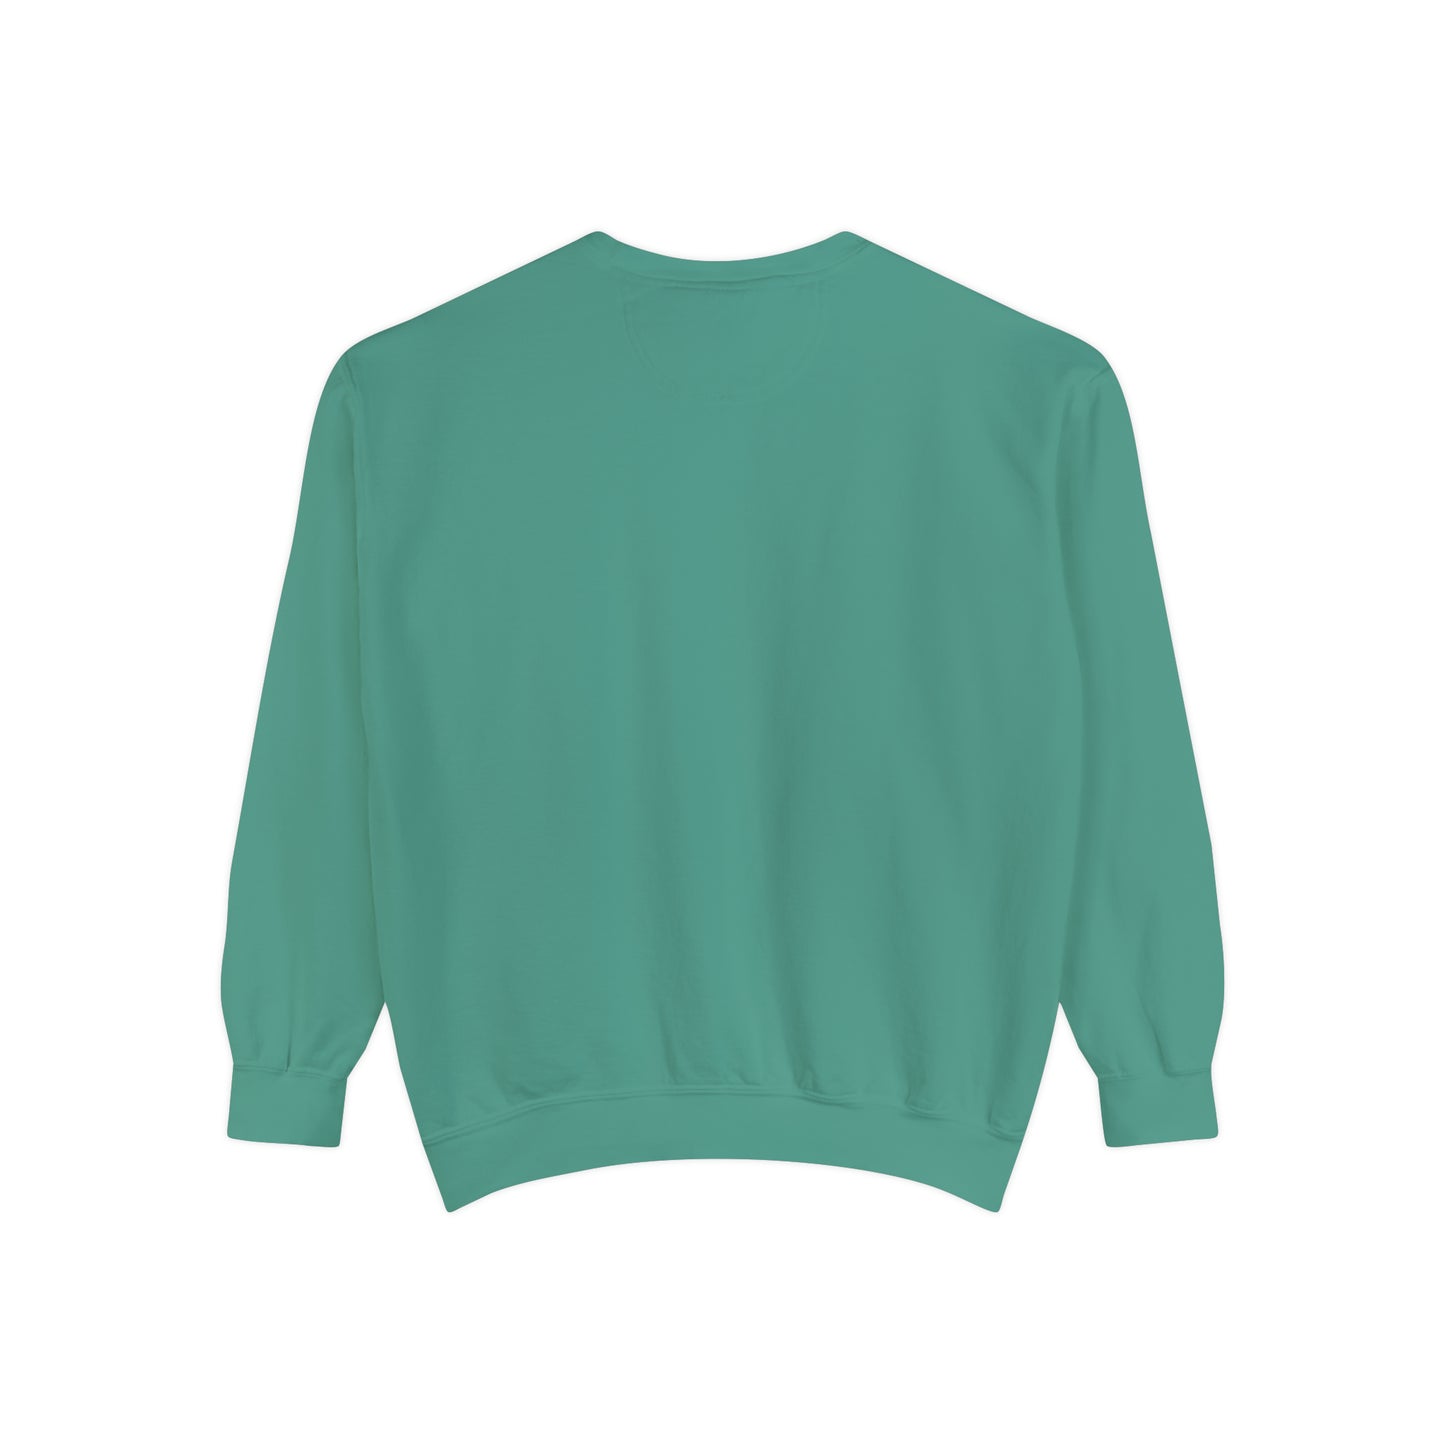 Big Nick Energy Comfort Colors Unisex Garment-Dyed Sweatshirt